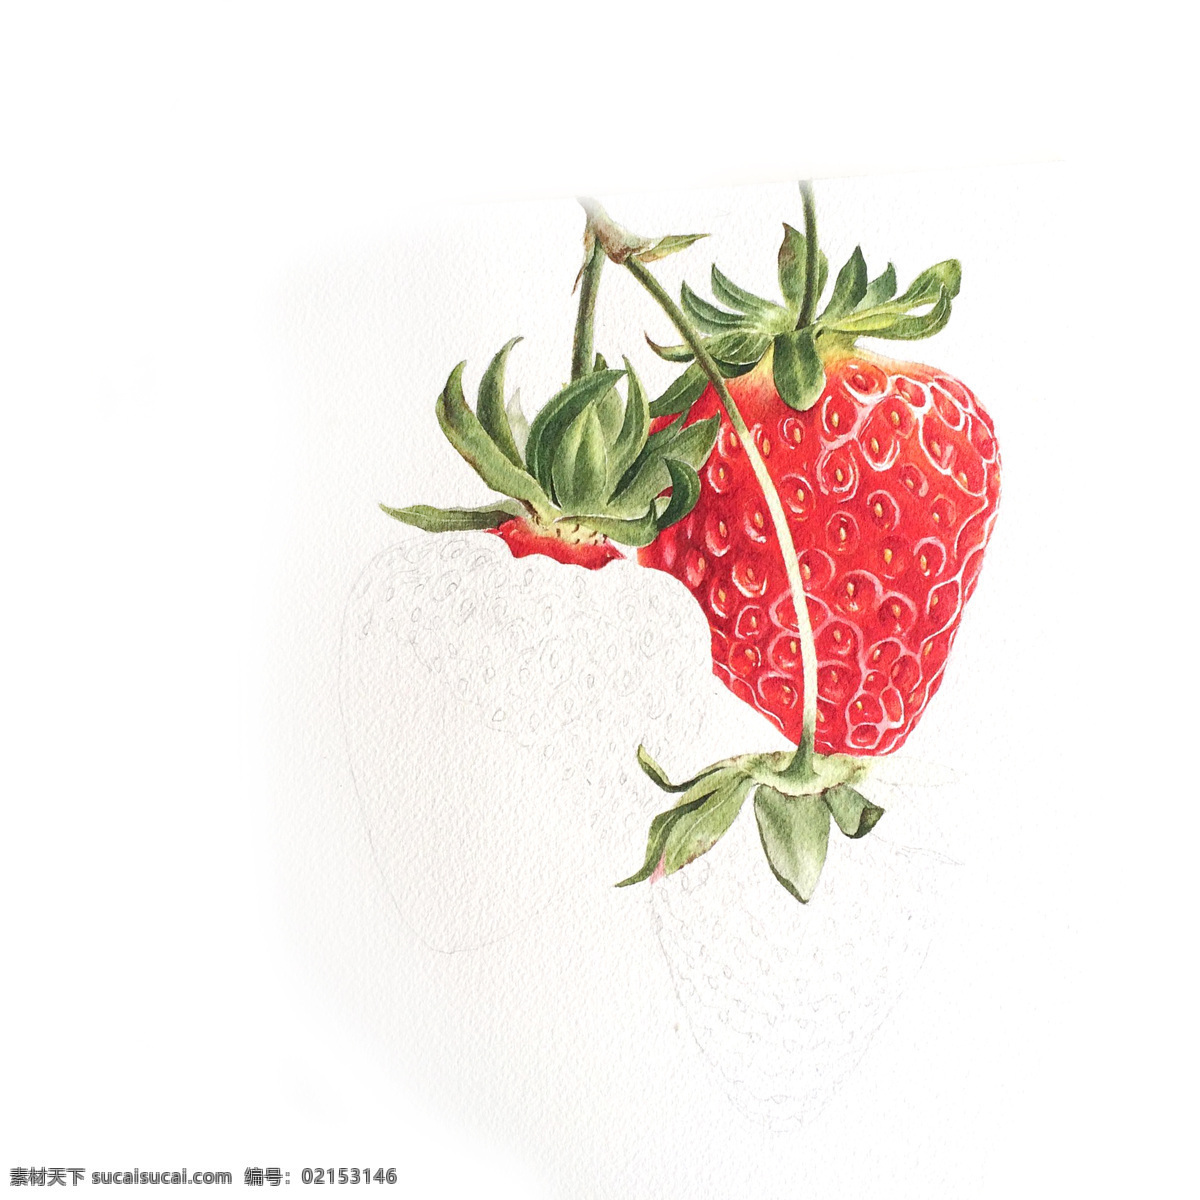 彩铅草莓 国外 彩铅绘画 水彩 水果手绘 临摹 彩铅水果 手绘教程 水果插画 精美绘画 食物 彩色素描 插画 文化艺术 绘画书法